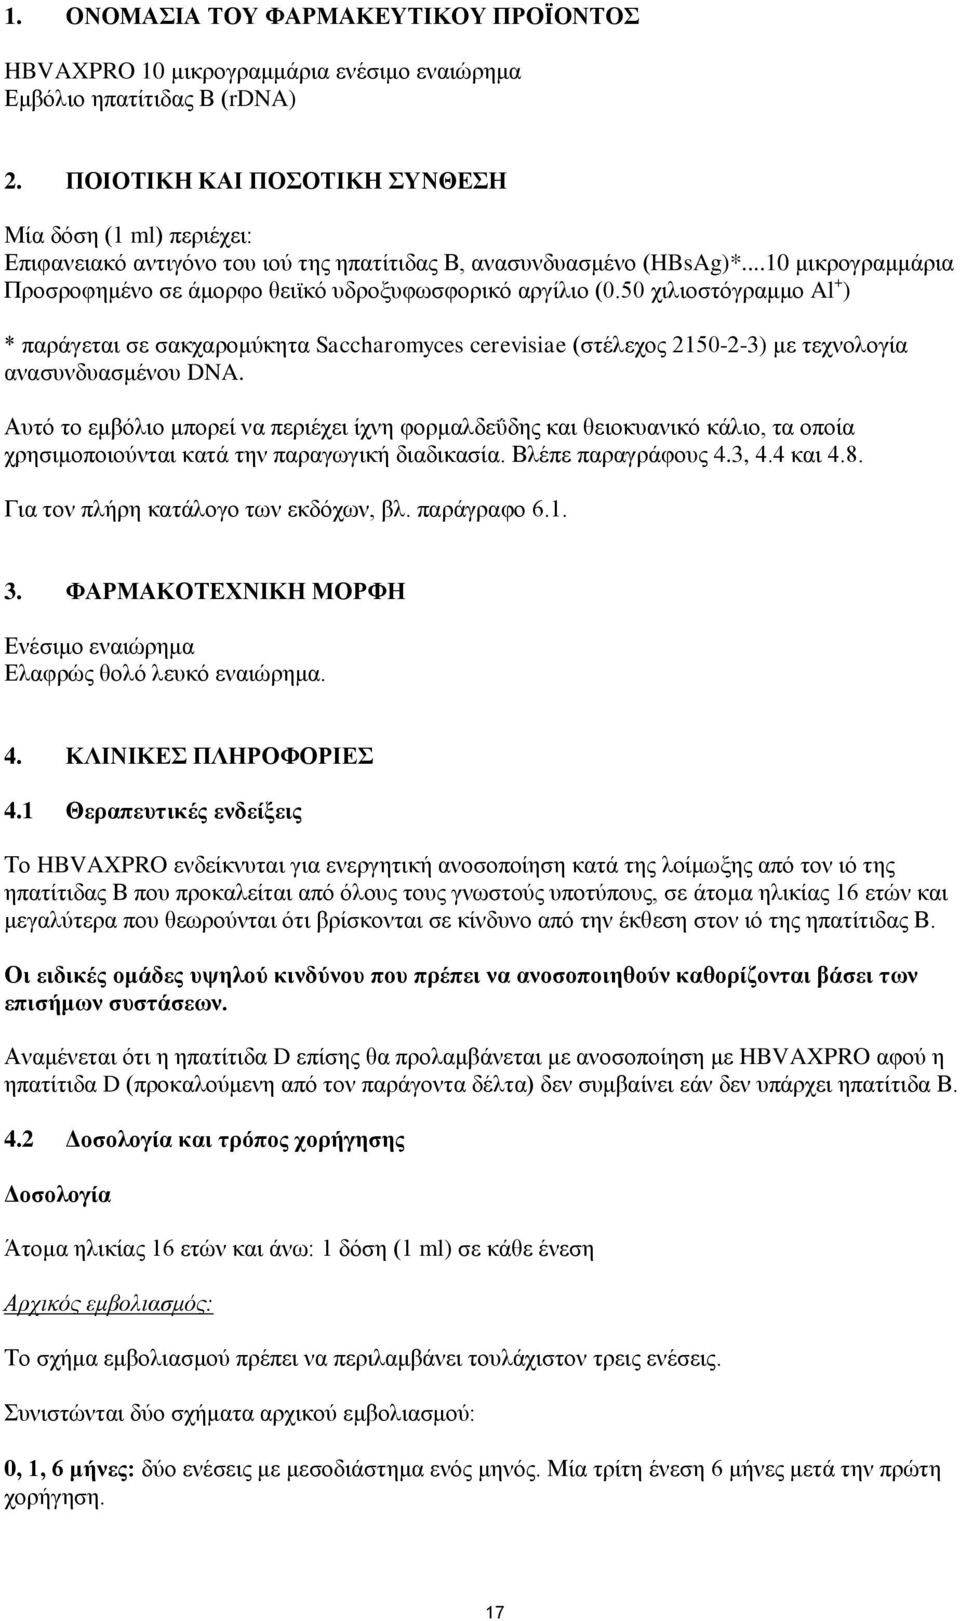 50 πζθζμζηόβναιιμ Al + ) * πανάβεηαζ ζε ζαηπανμιύηδηα Saccharomyces cerevisiae (ζηέθεπμξ 2150-2-3) ιε ηεπκμθμβία ακαζοκδοαζιέκμο DNA.